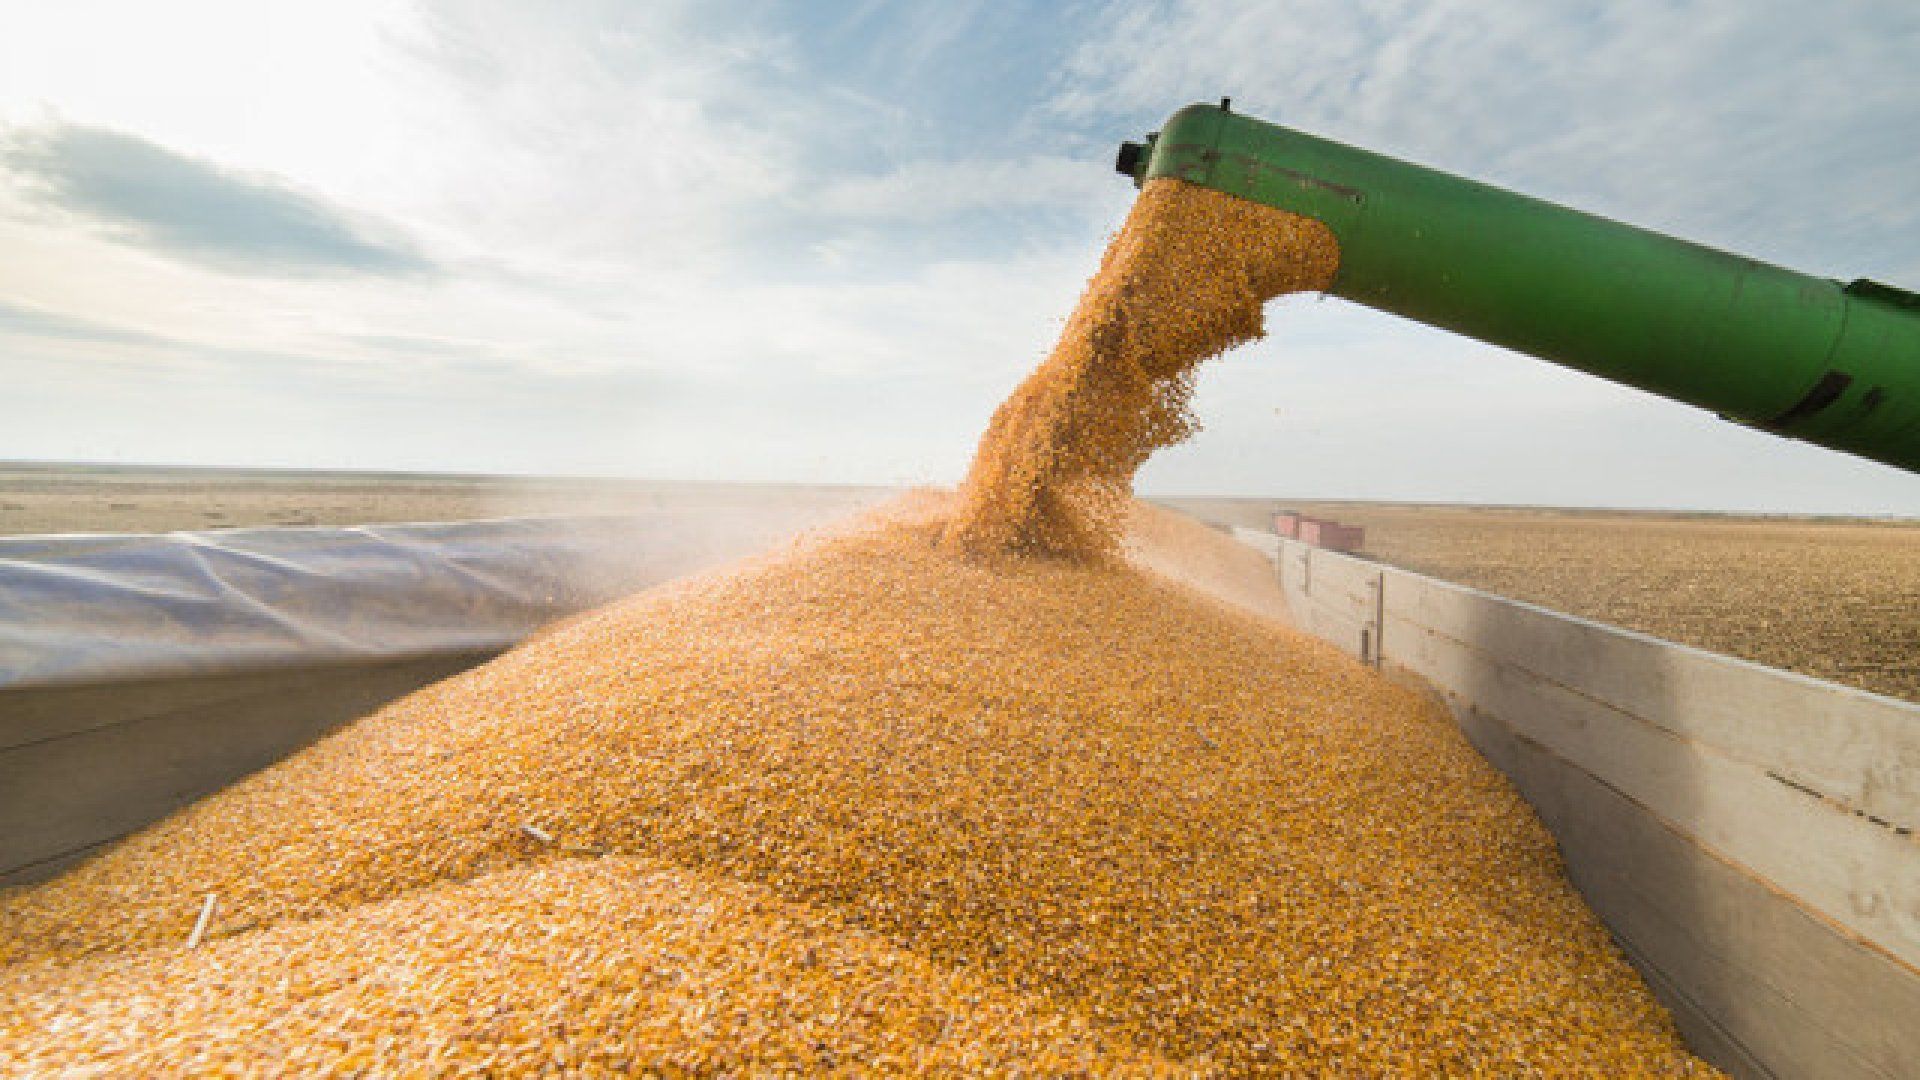 Ucraina: Exporturile de cereale au scăzut anul acesta cu aproape 30%